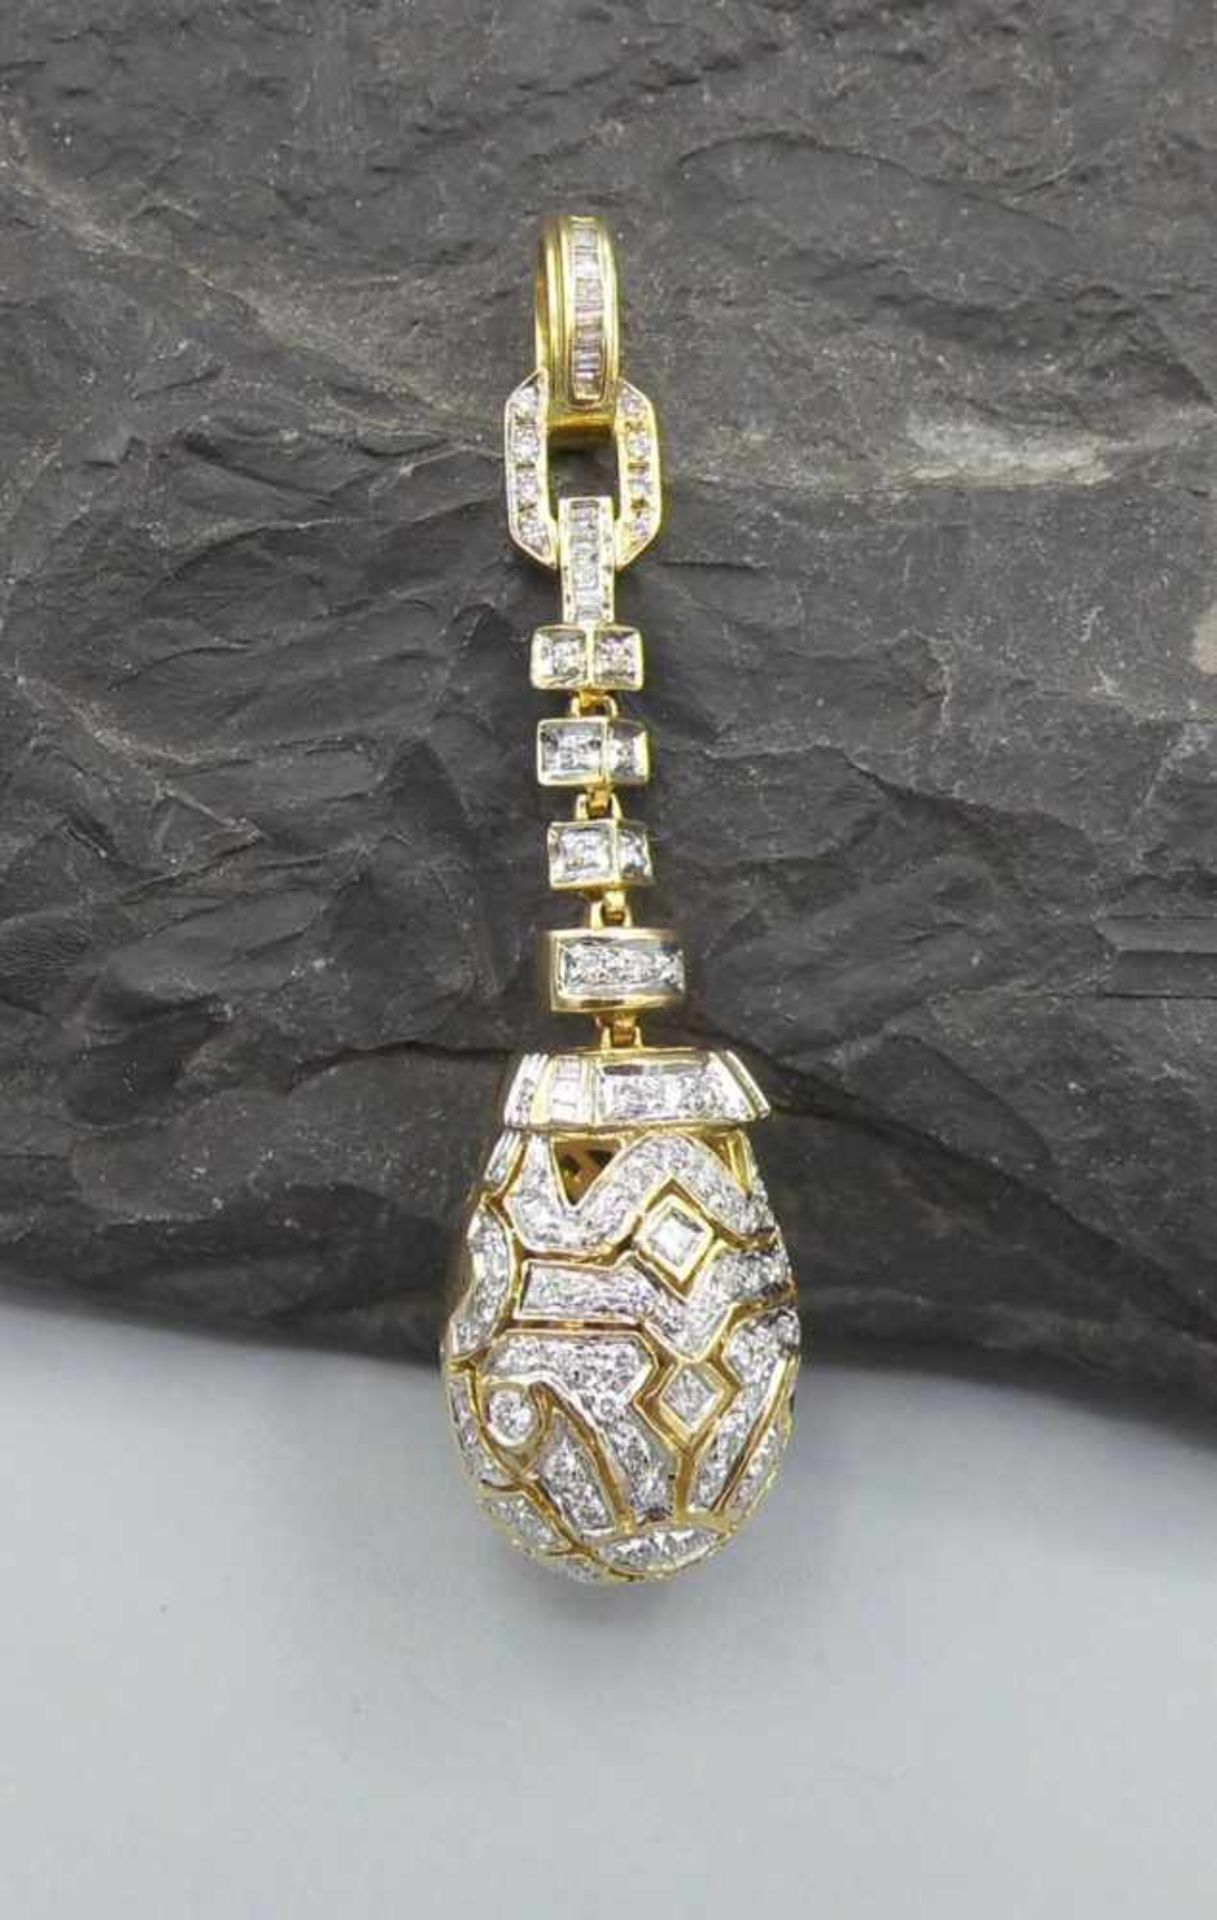 EXKLUSIVER ANHÄNGER MIT BRILLANTBESATZ / pendant, in 750er Gelbgoldfassung (12 g), komplett